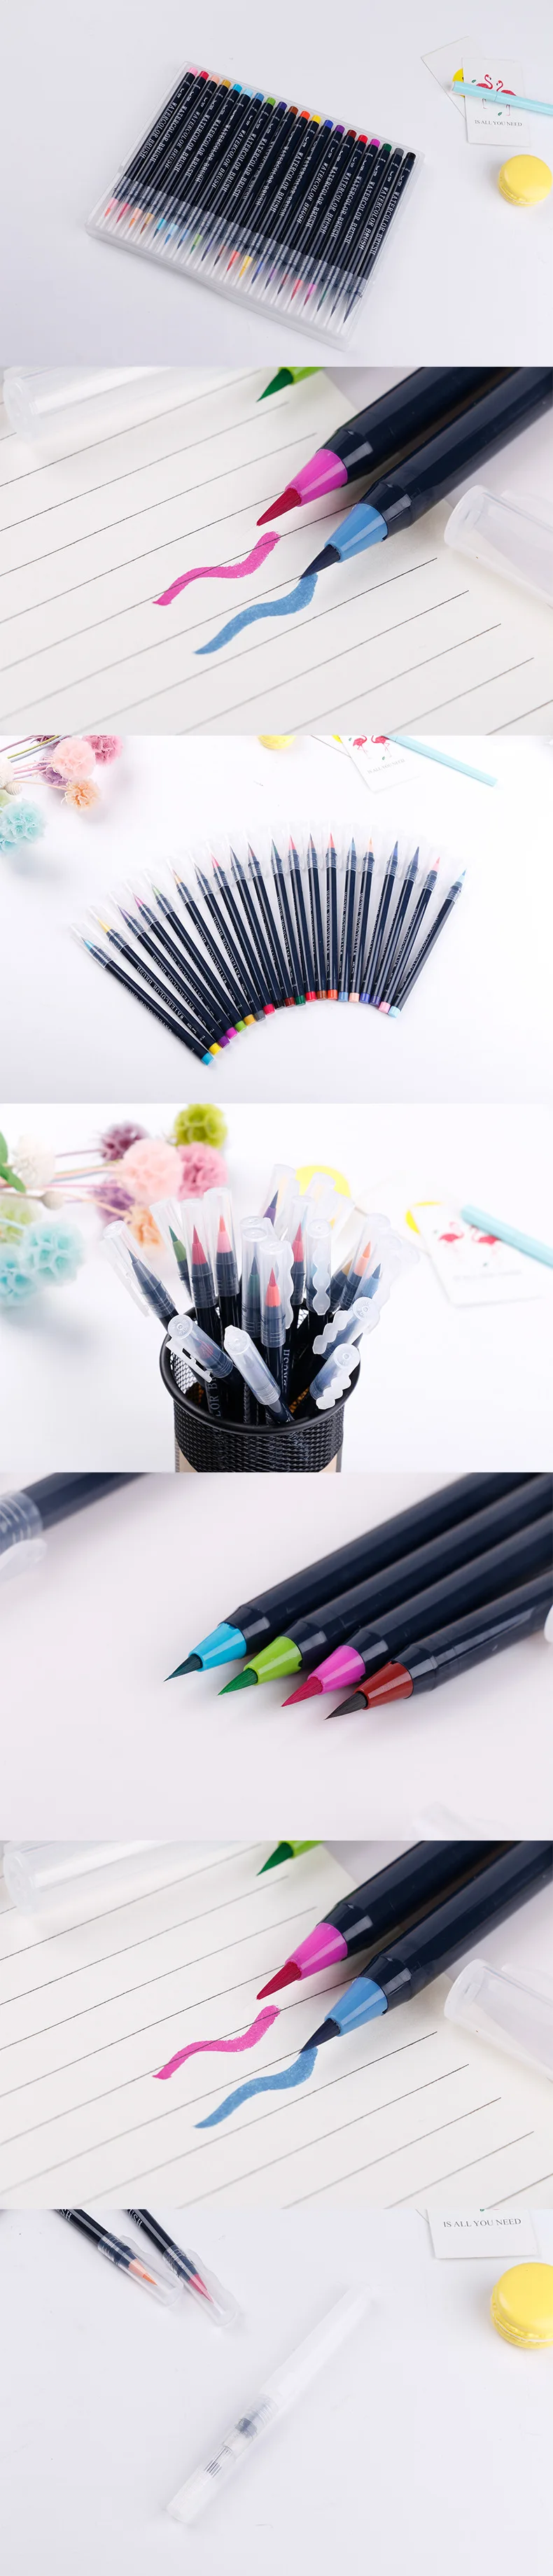 20 цветов Премиум картина мягкая ручка набор воды Цвет Маркер для рисования эффект лучший для манга Эскиз Рисование комикс каллиграфия